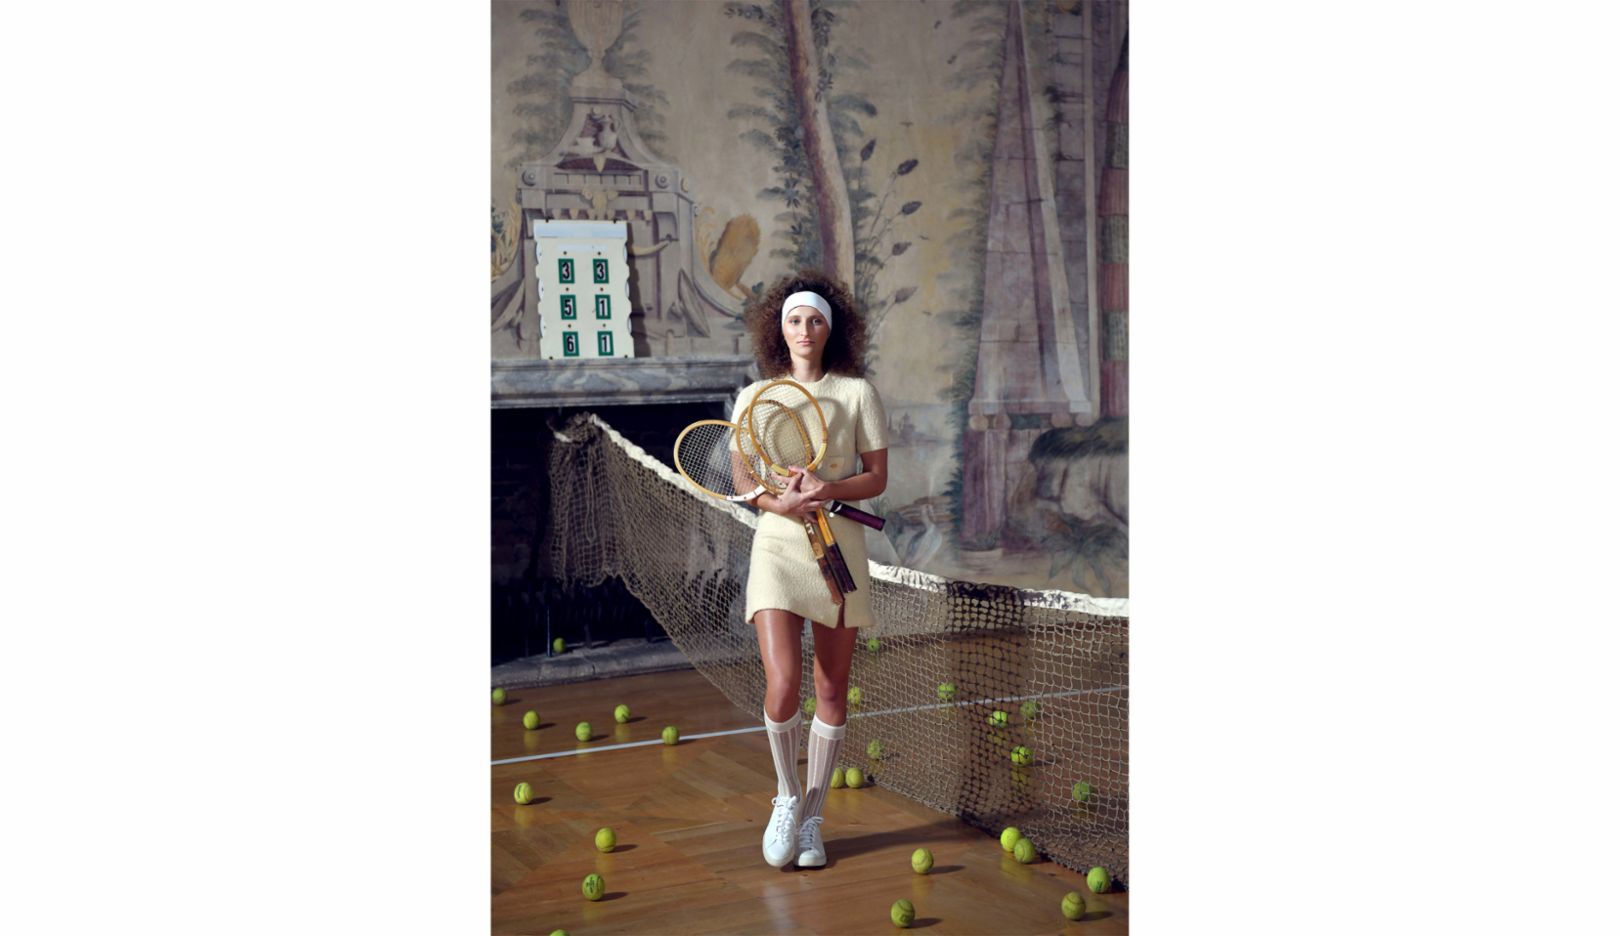 お城で。屋外での撮影は天候に左右される。そんな理由でリトムニェジツェがチェコ共和国にあるネビロヴィ城のダンスホールをマルケータ・ヴォンドロショーヴァのためにテニスコートに変身させた。「ノスタルジックな写真を目指して、彼女がこの城に住んでいたら、と想像してみたのです。マルケータがここの寄木細工の床でボールを打つのを見るのはとても楽しかったです。彼女の顔ってオランダの絵画に出てきそうな顔ですよね」。  